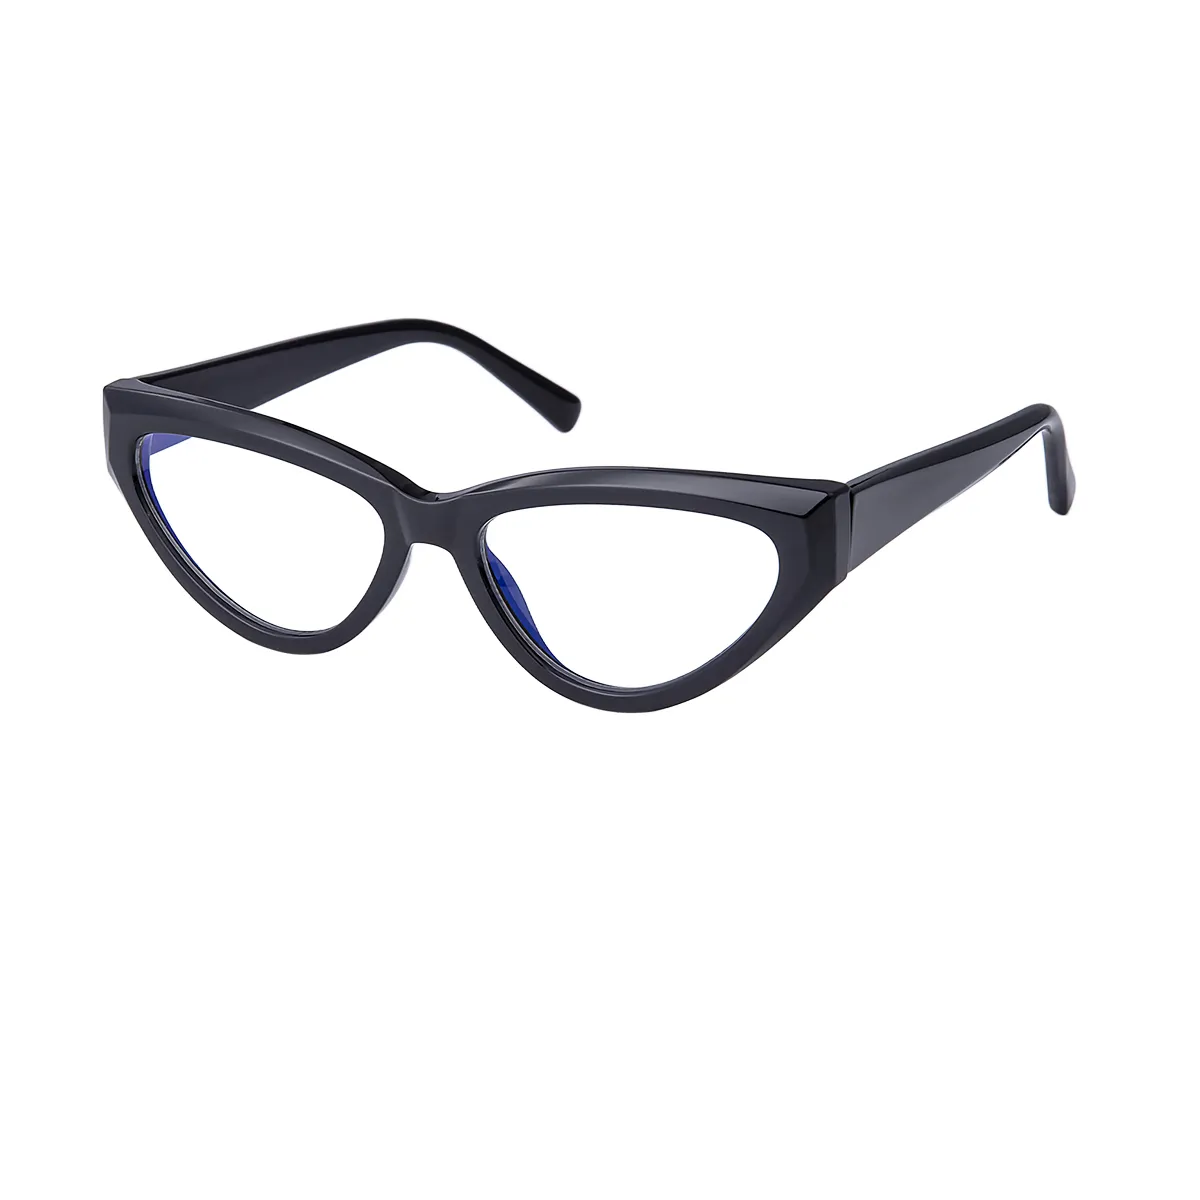 Classic Cat-eye Black Eyeglasses for Women & Men